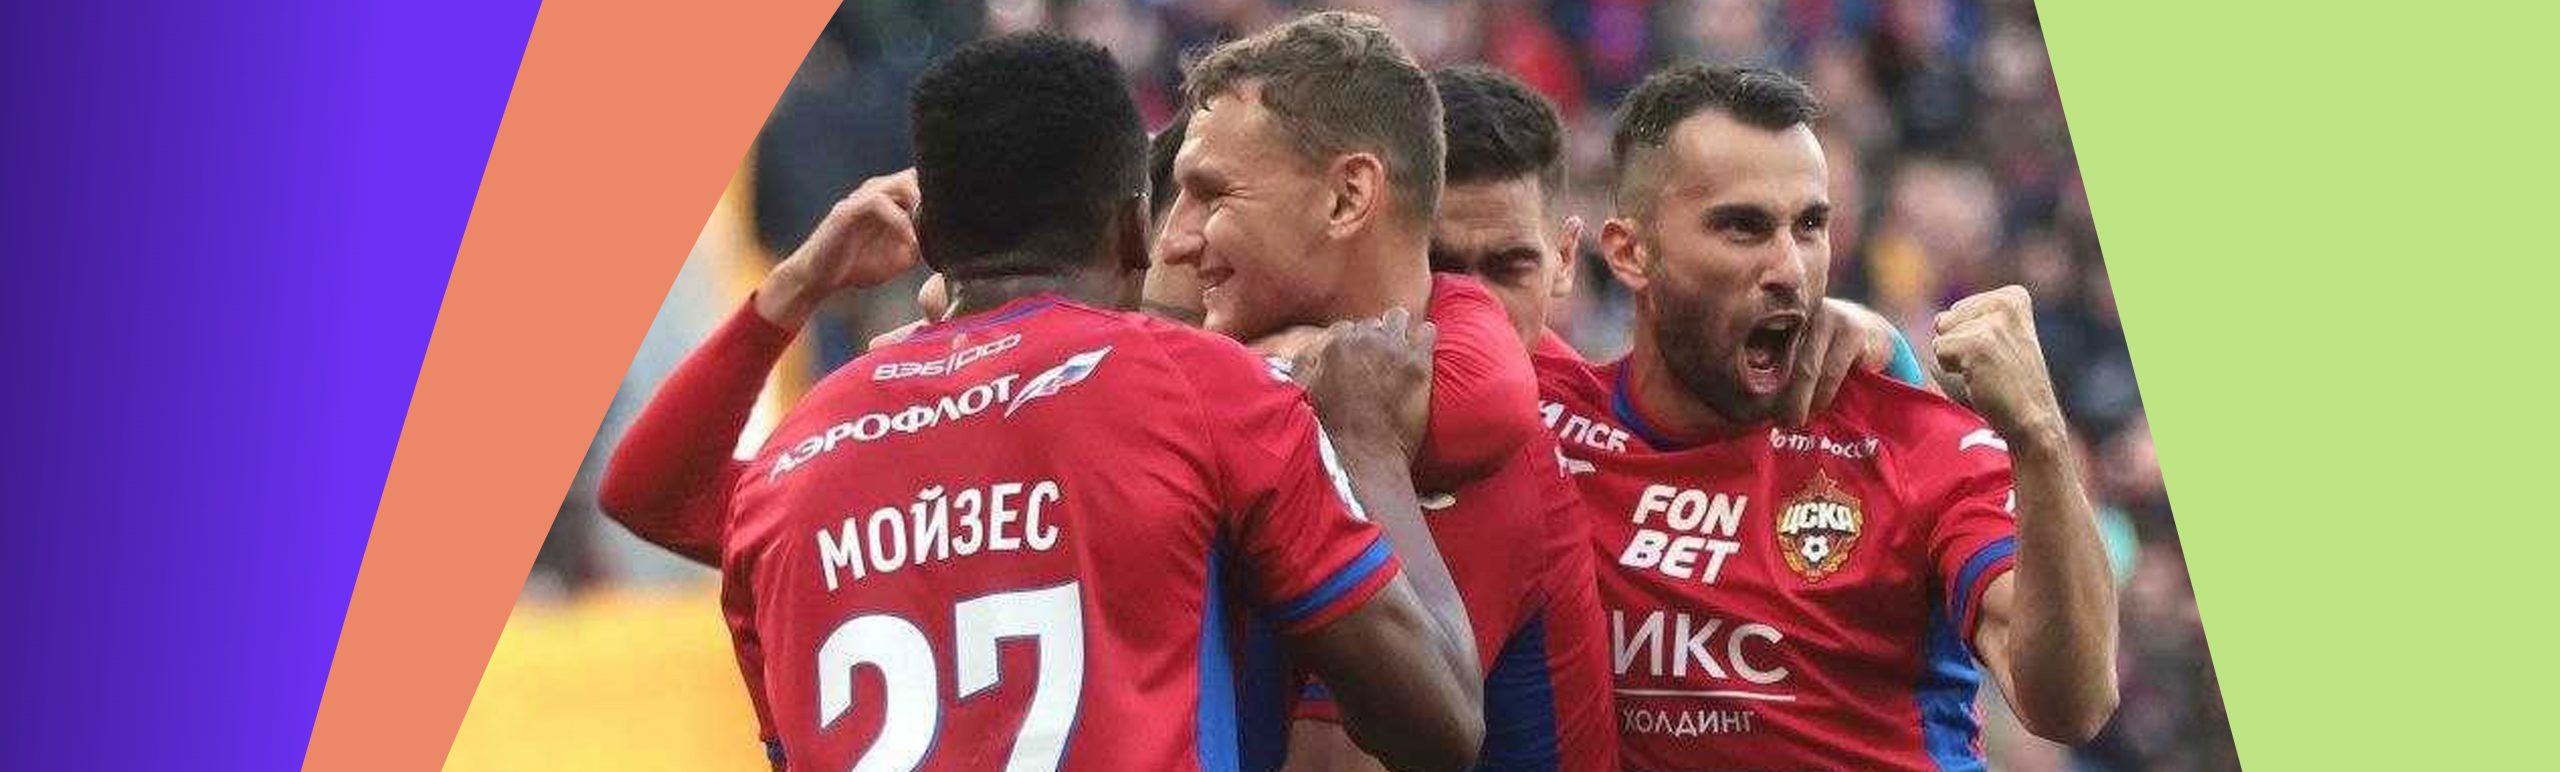 RPL. SSKA 3 bor penalti tepib «Krasnodar»ni yirik hisobda yengdi, «Nijniy Novgorod» Grozniyda g‘alaba qozondi